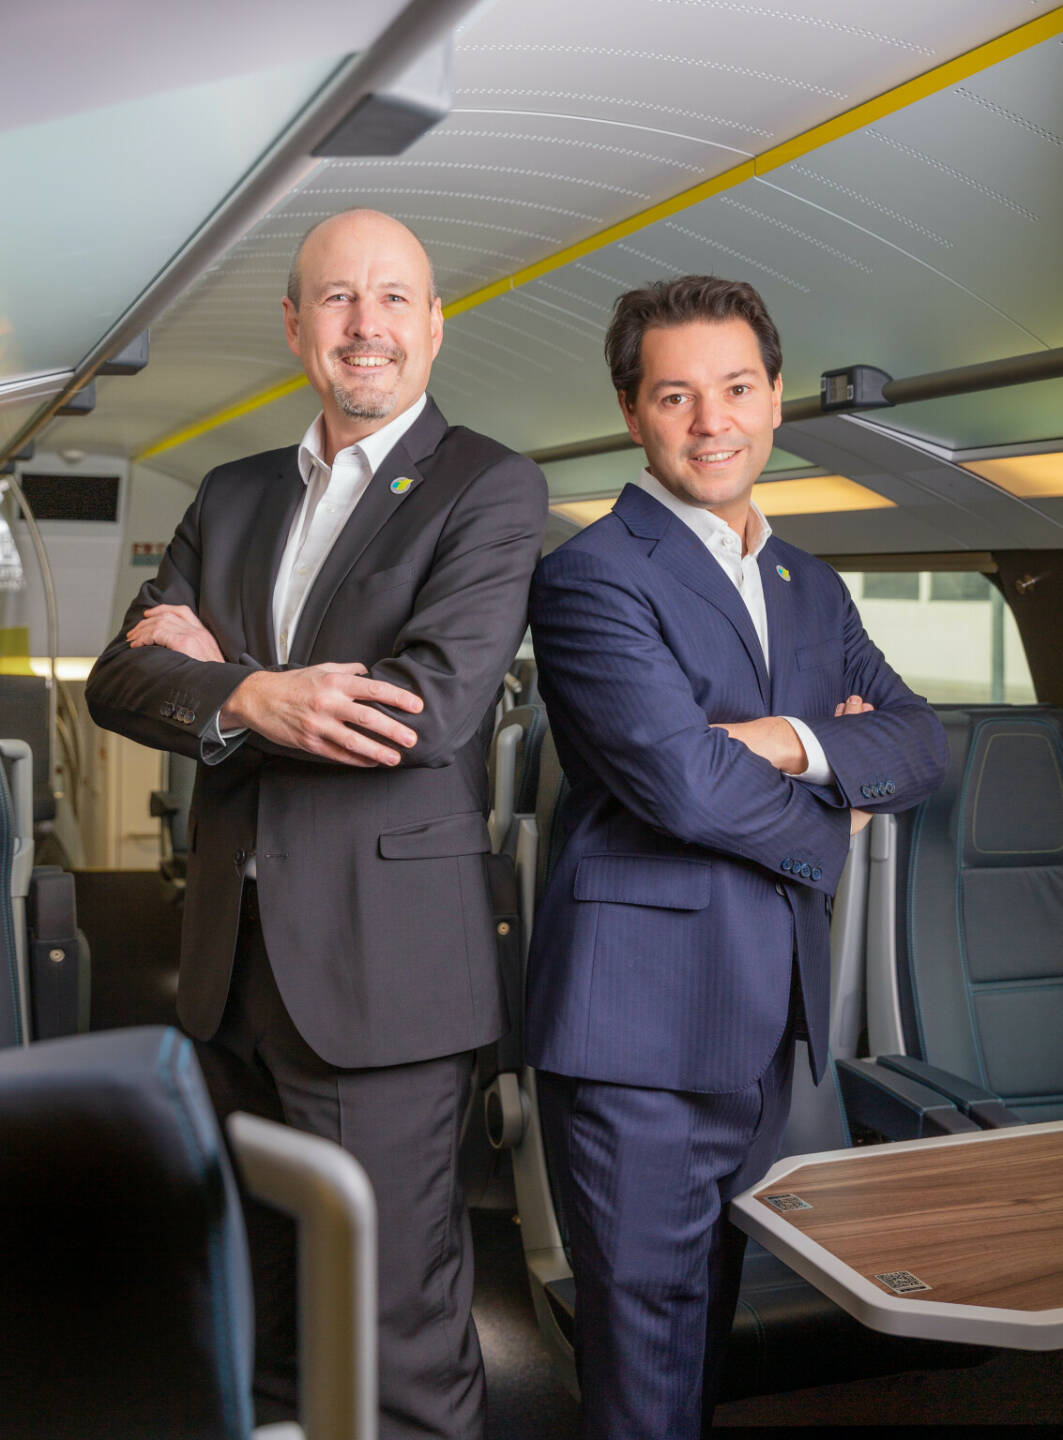 Ab dem 1. März 2022 werden Thomas Posch und Florian Kazalek als Vorstände die Rail Holding AG sowie als Geschäftsführer die WESTbahn Management GmbH leiten. Fotocredit: WESTbahn Management GmbH